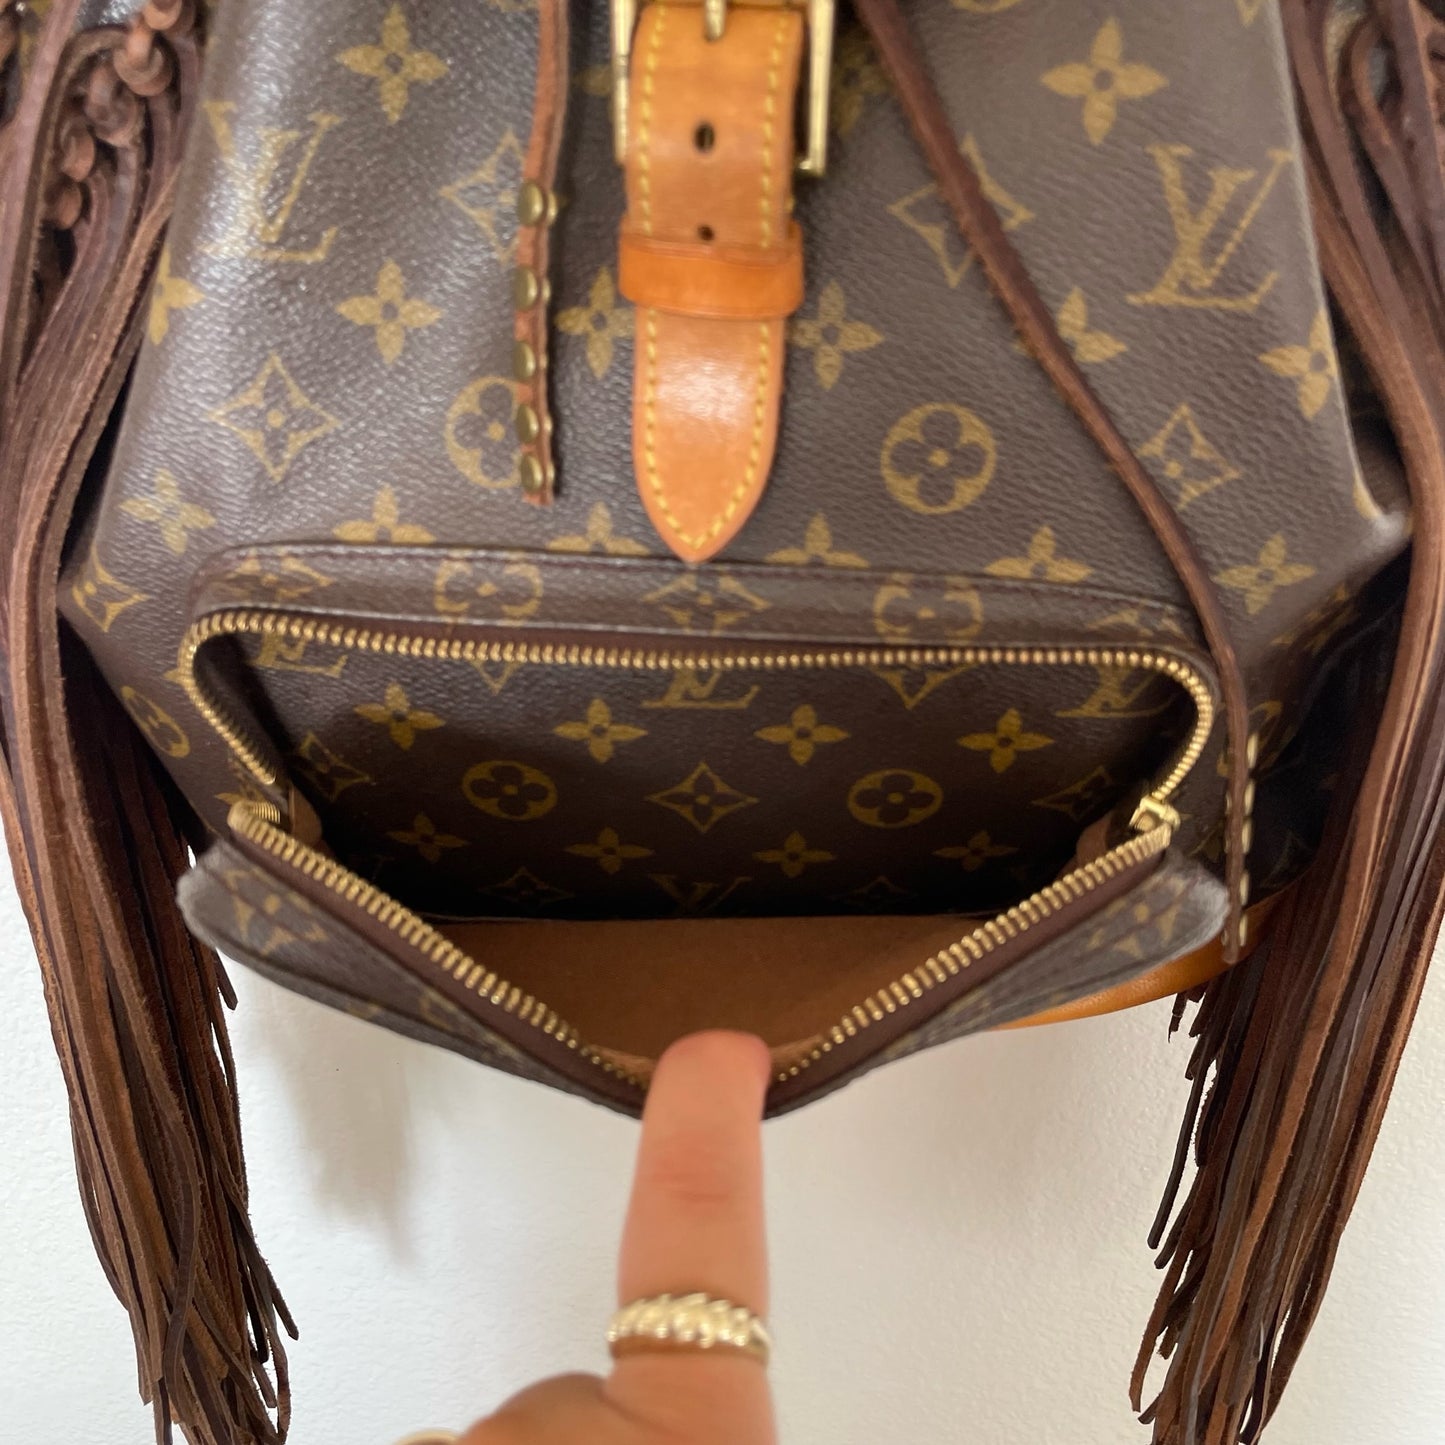 LRB Montsouris GM – Luxury Reborn Bags